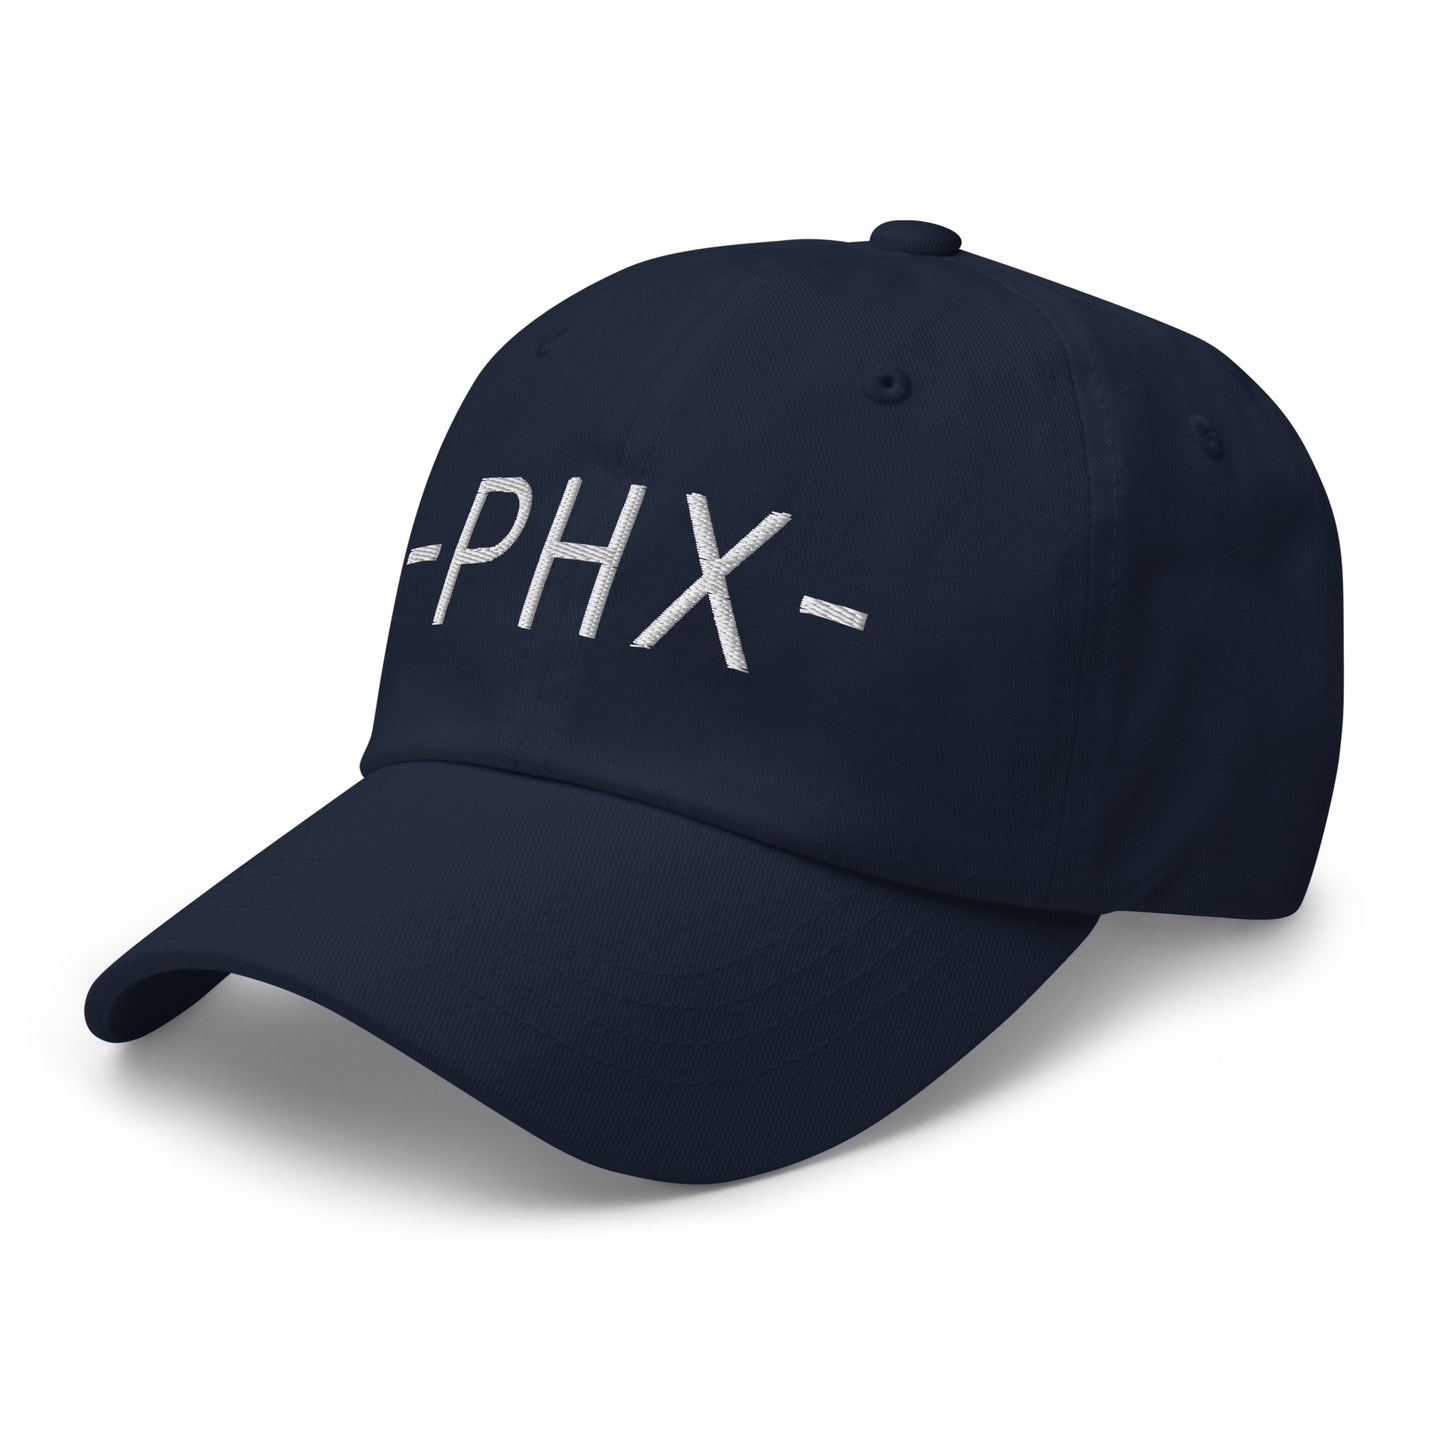 Souvenir Baseball Cap - White • PHX Phoenix • YHM Designs - Image 15